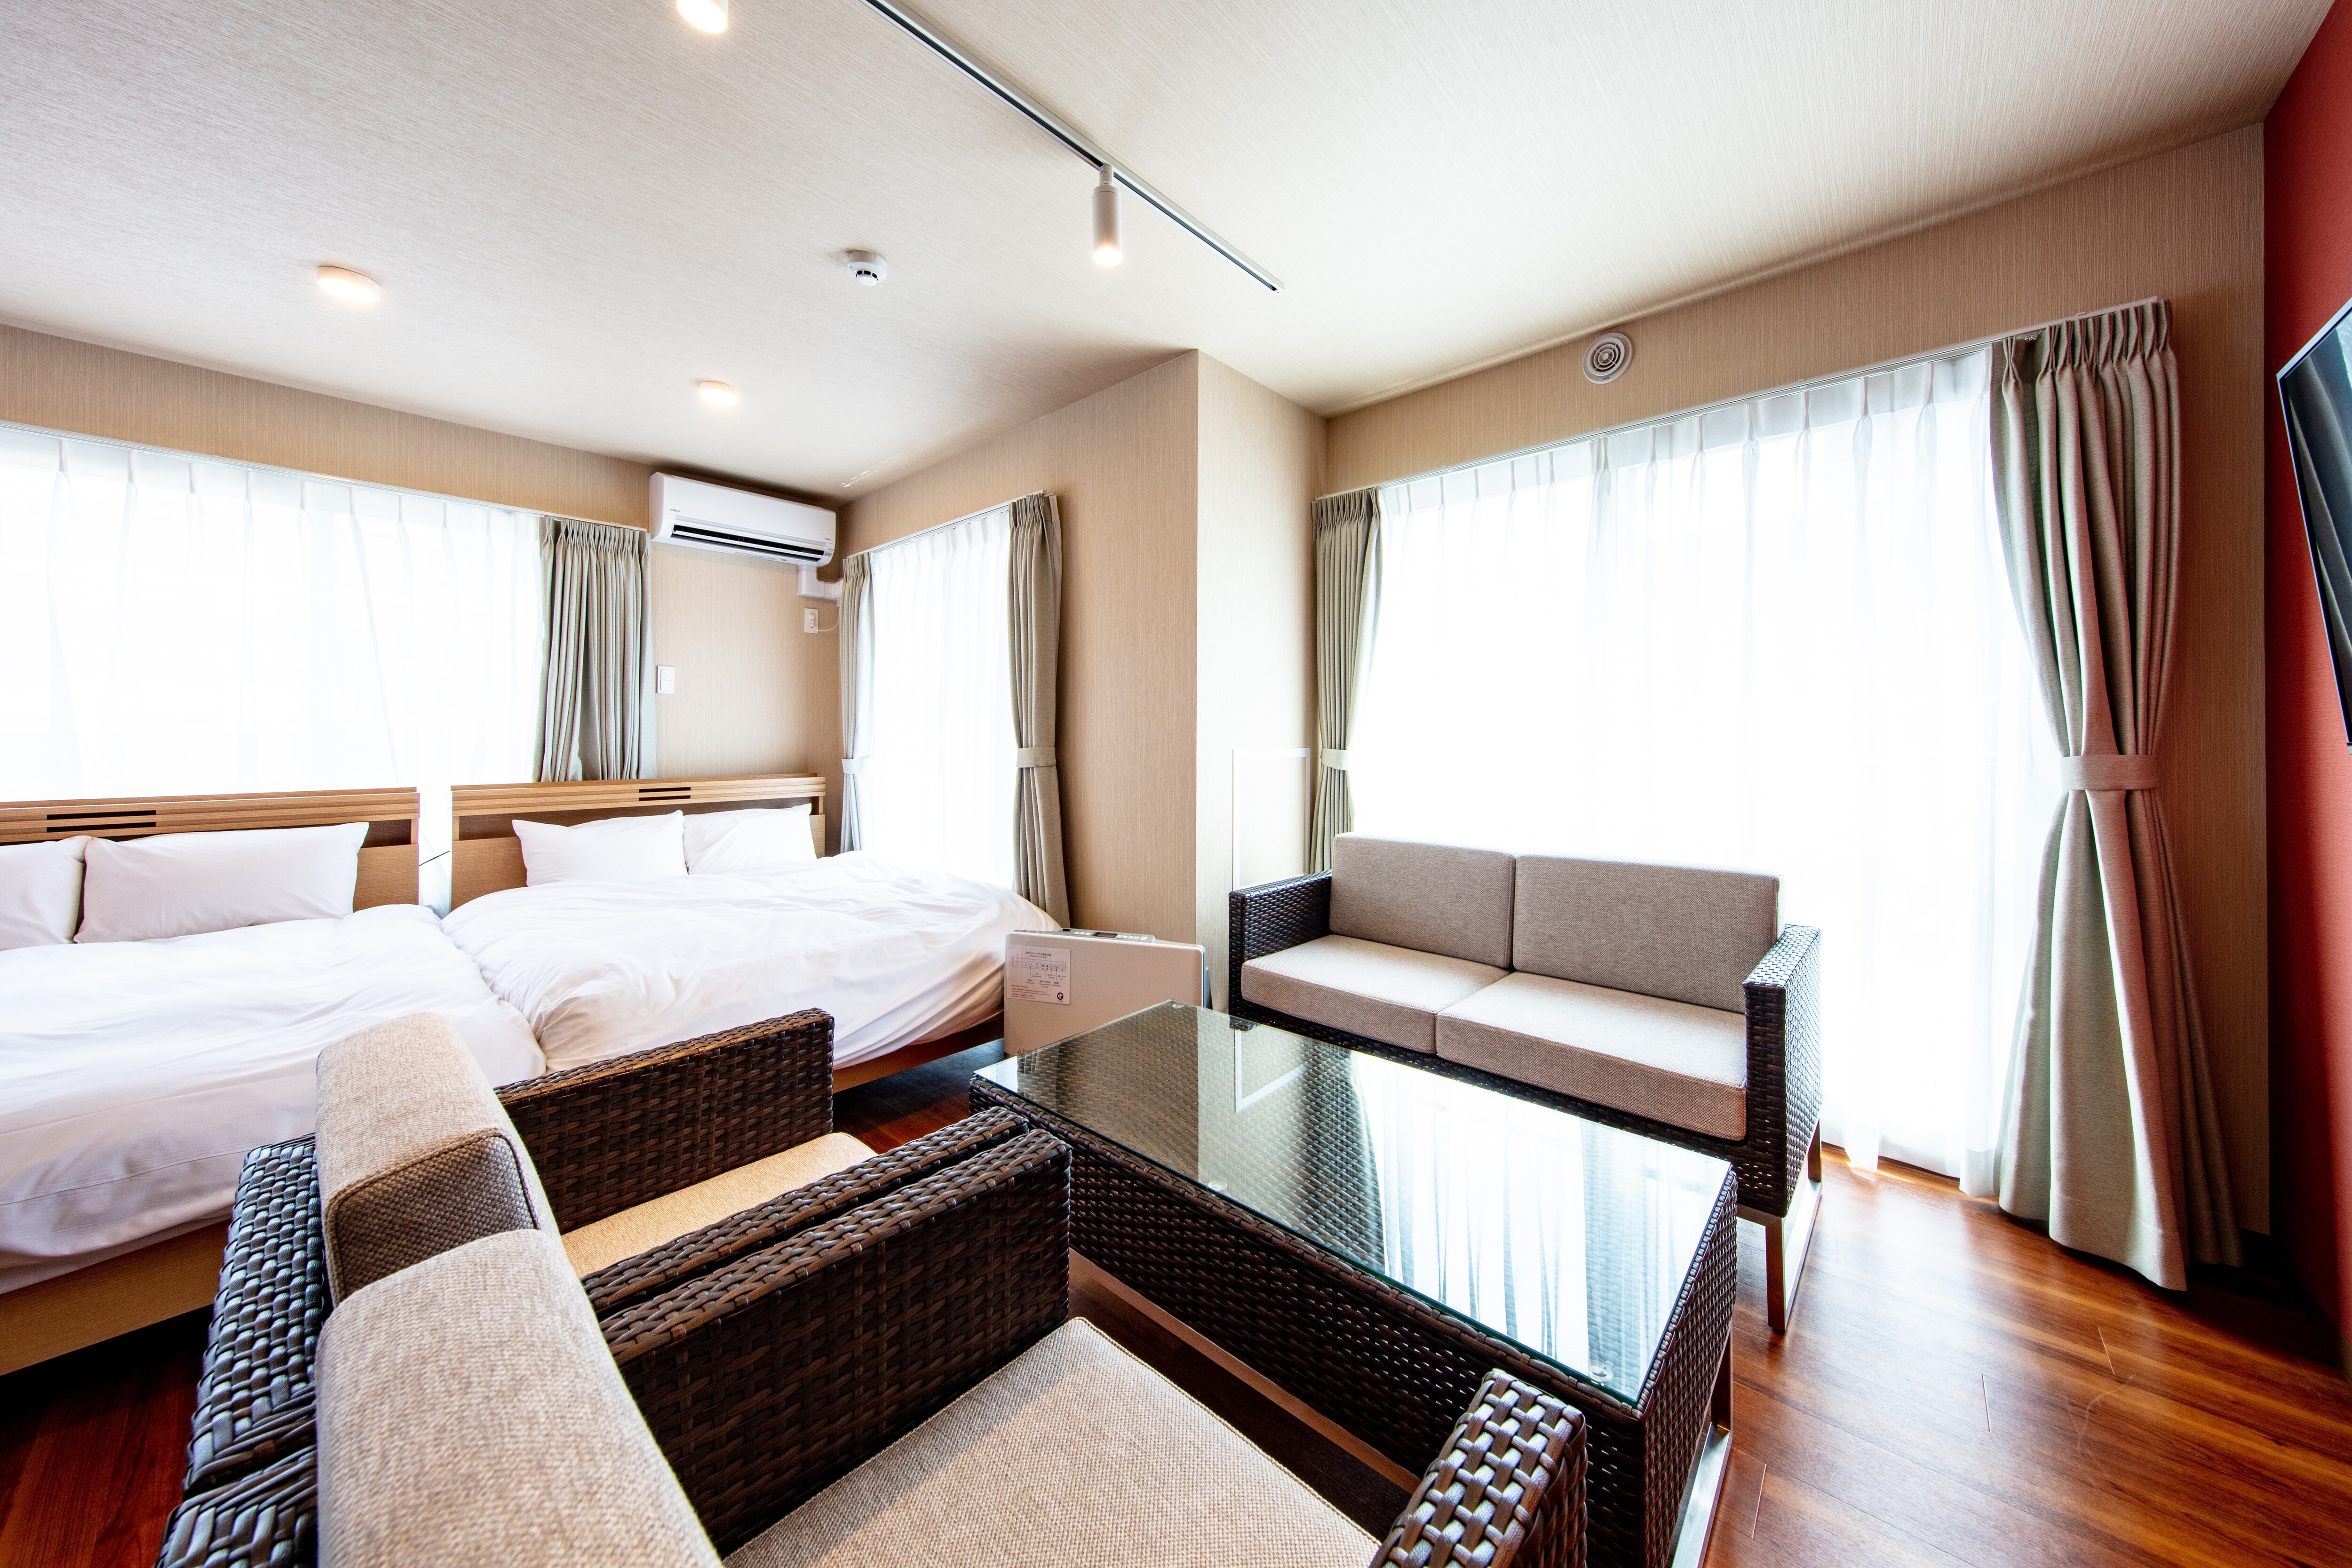 Standard 4 bedrooms: living room, bedroom